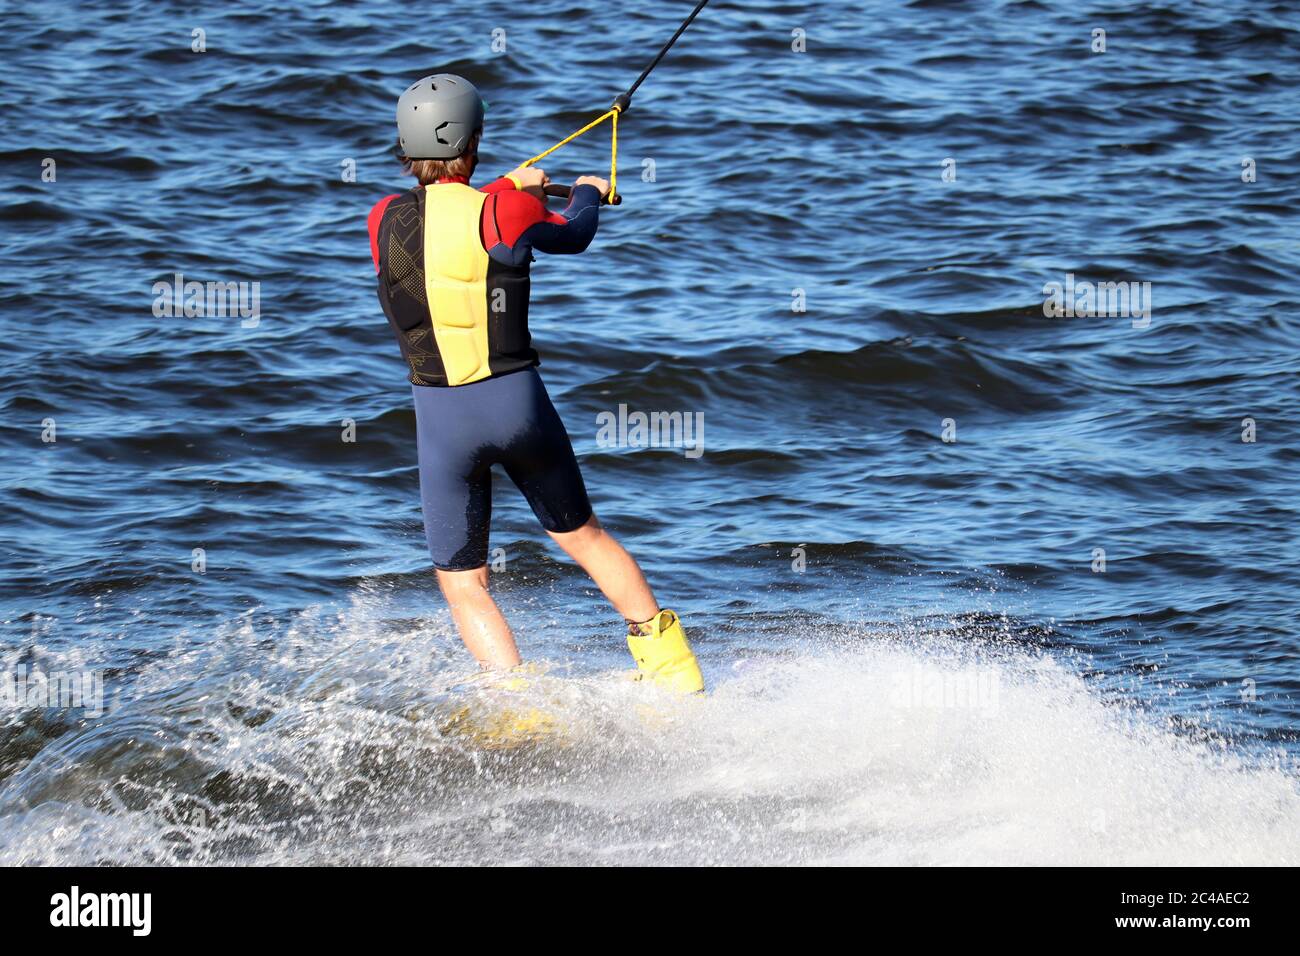 Wakeboard en journée ensoleillée, l'homme réalise un tour dans un jet d'eau. Surfez dans le parc wake, sports d'été Banque D'Images